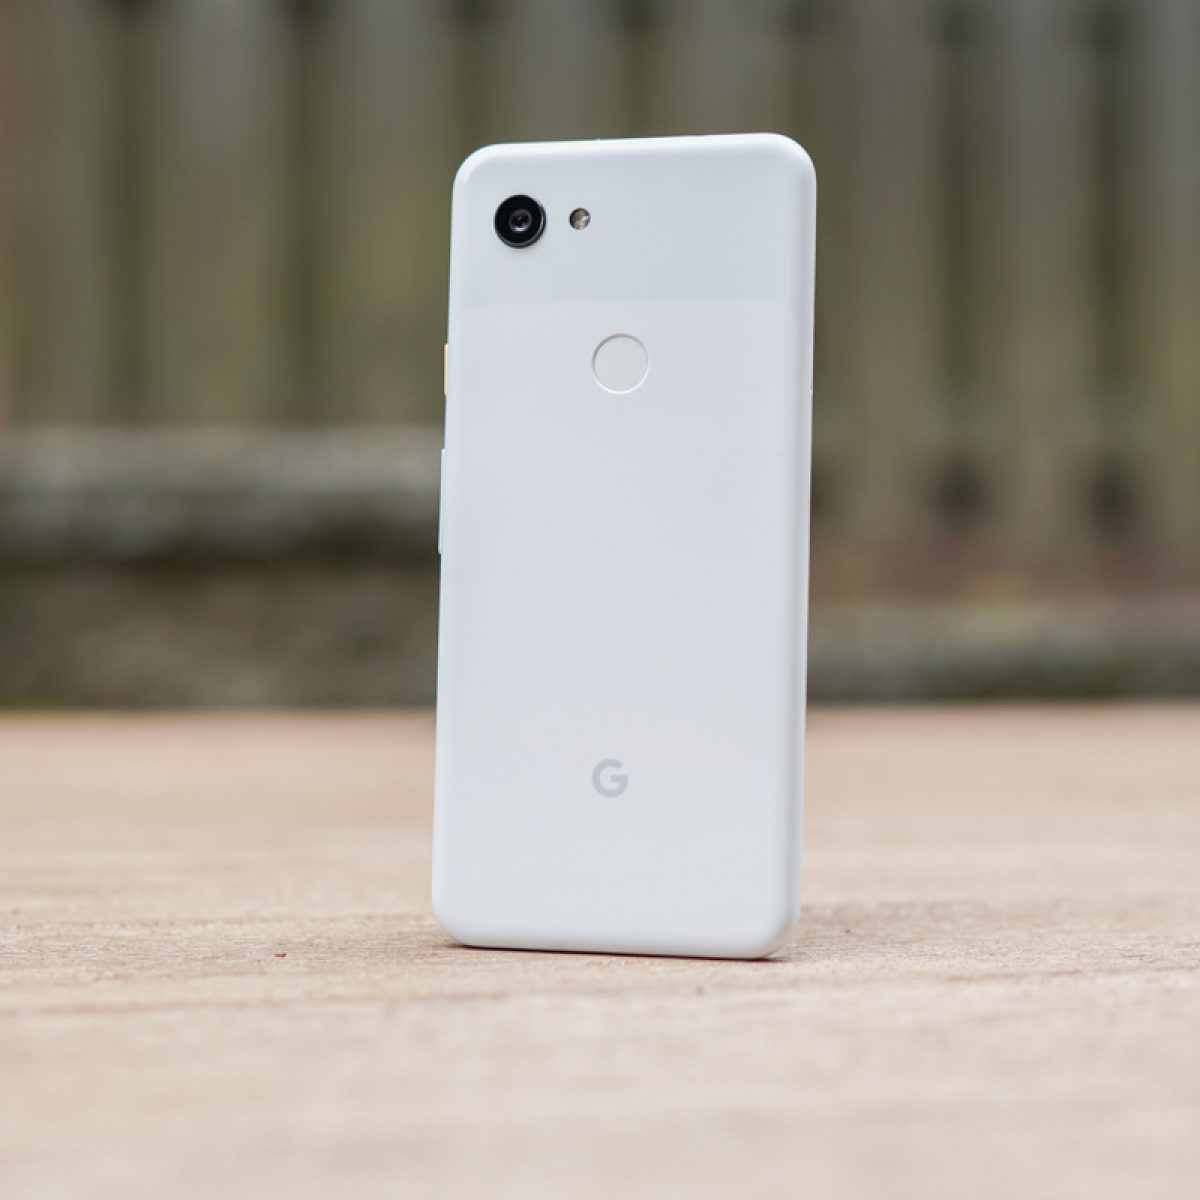 Pixel 3AXL Google Pixel 1 Google Pixel 3A Google Pixel 3XL Google Pixel 2XL Google Pixel Case Google Pixel 2 Rainbow Phone Case